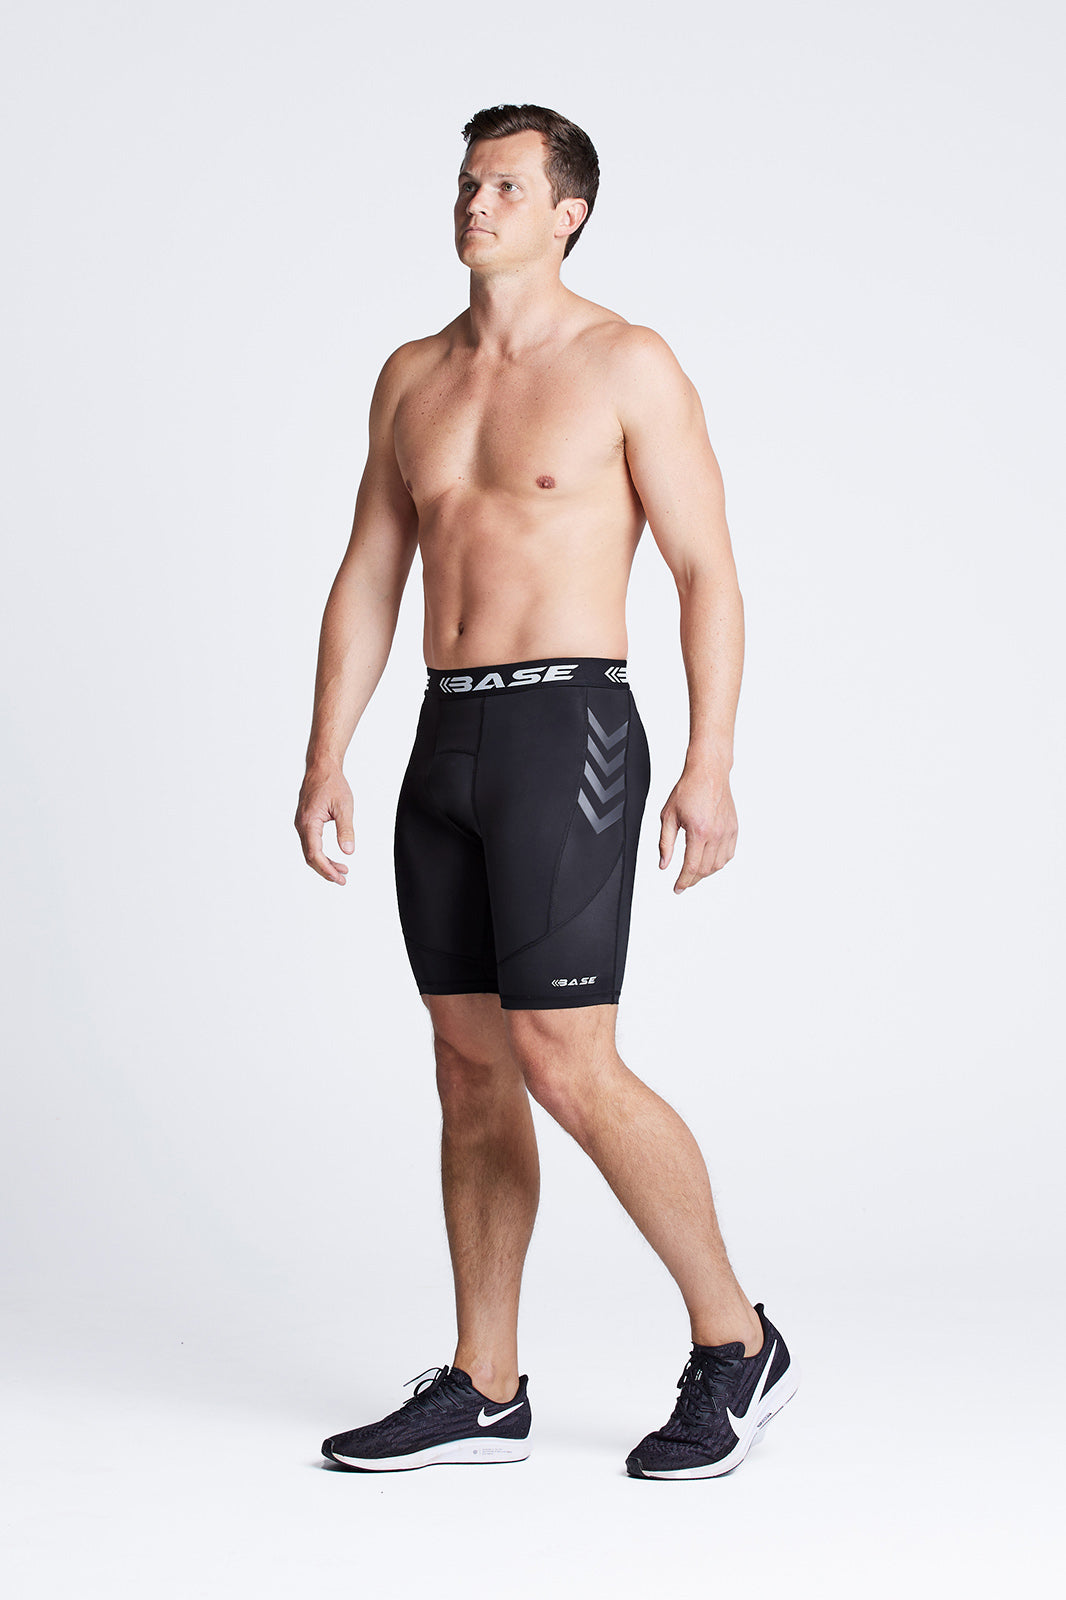 Endurance Compression Shorts for Men– Athletic Baselayer